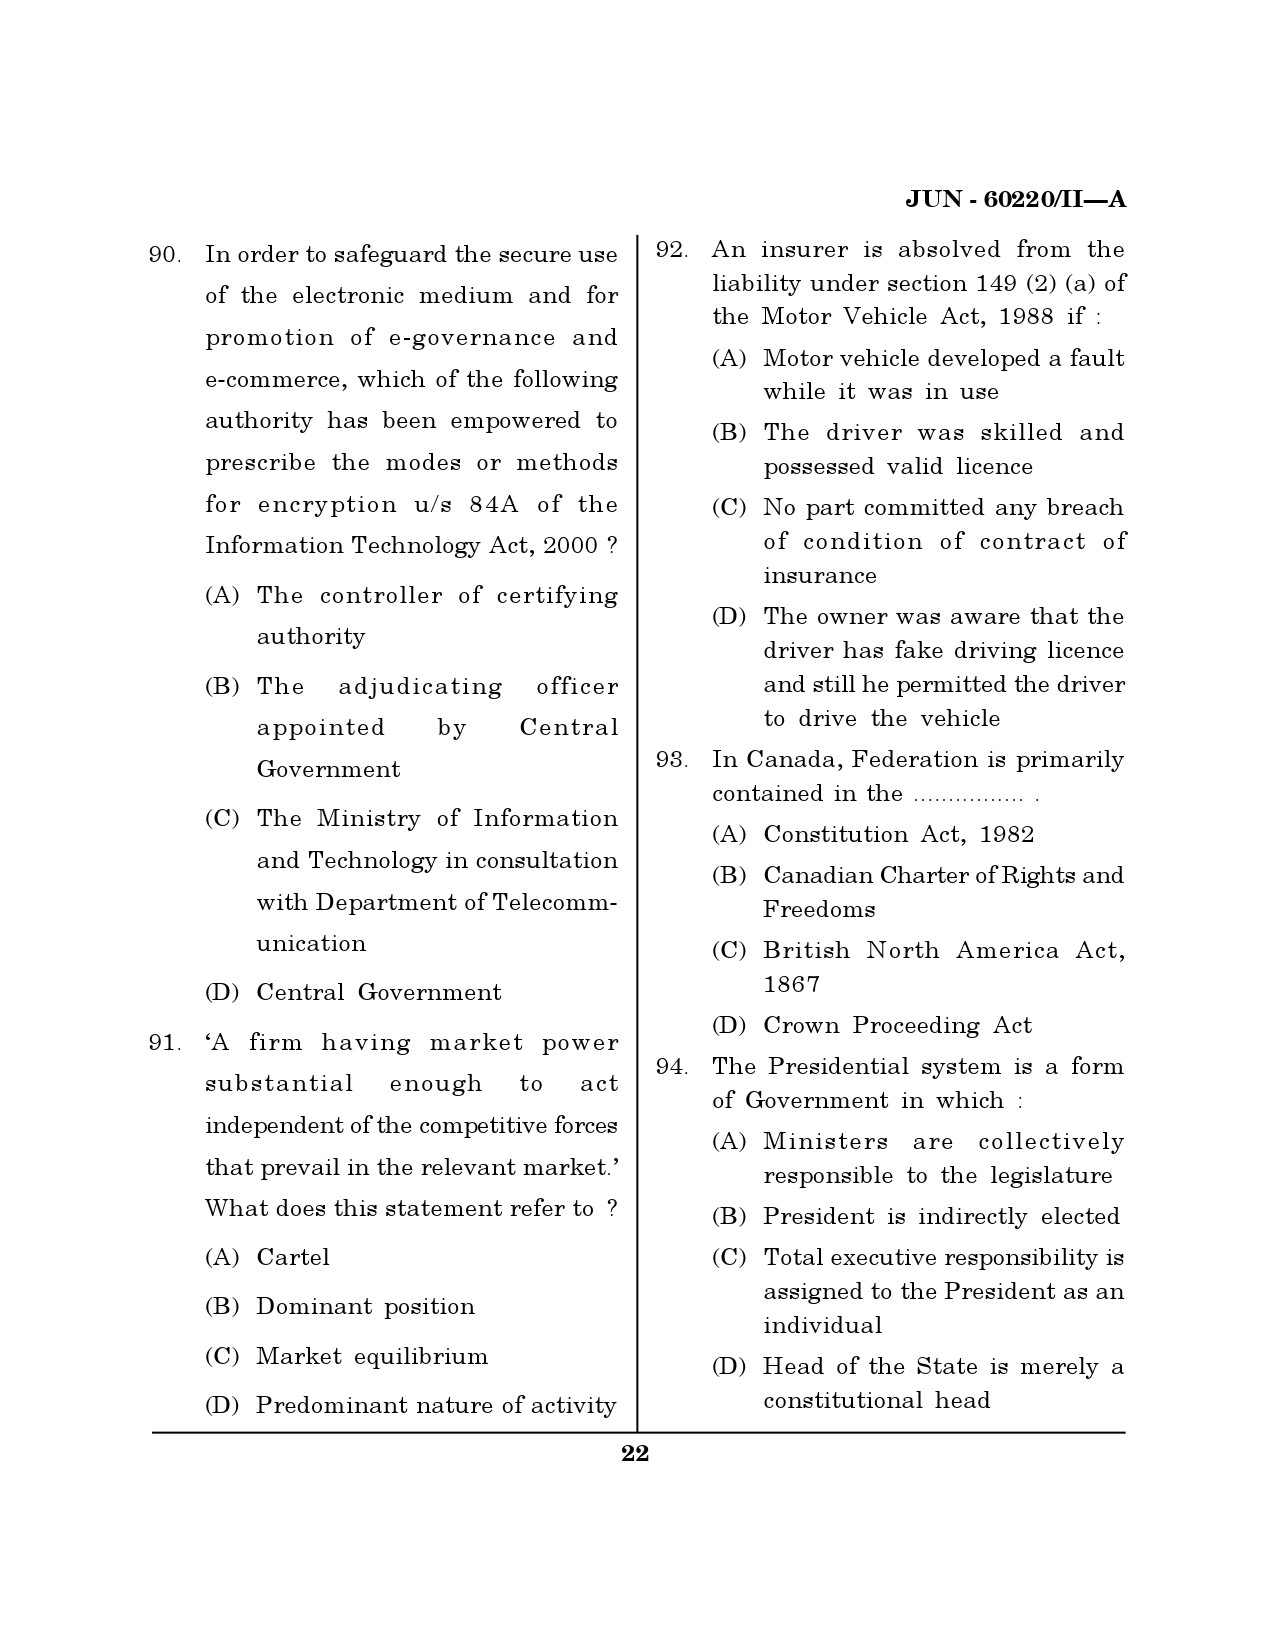 Maharashtra SET Law Question Paper II June 2020 21